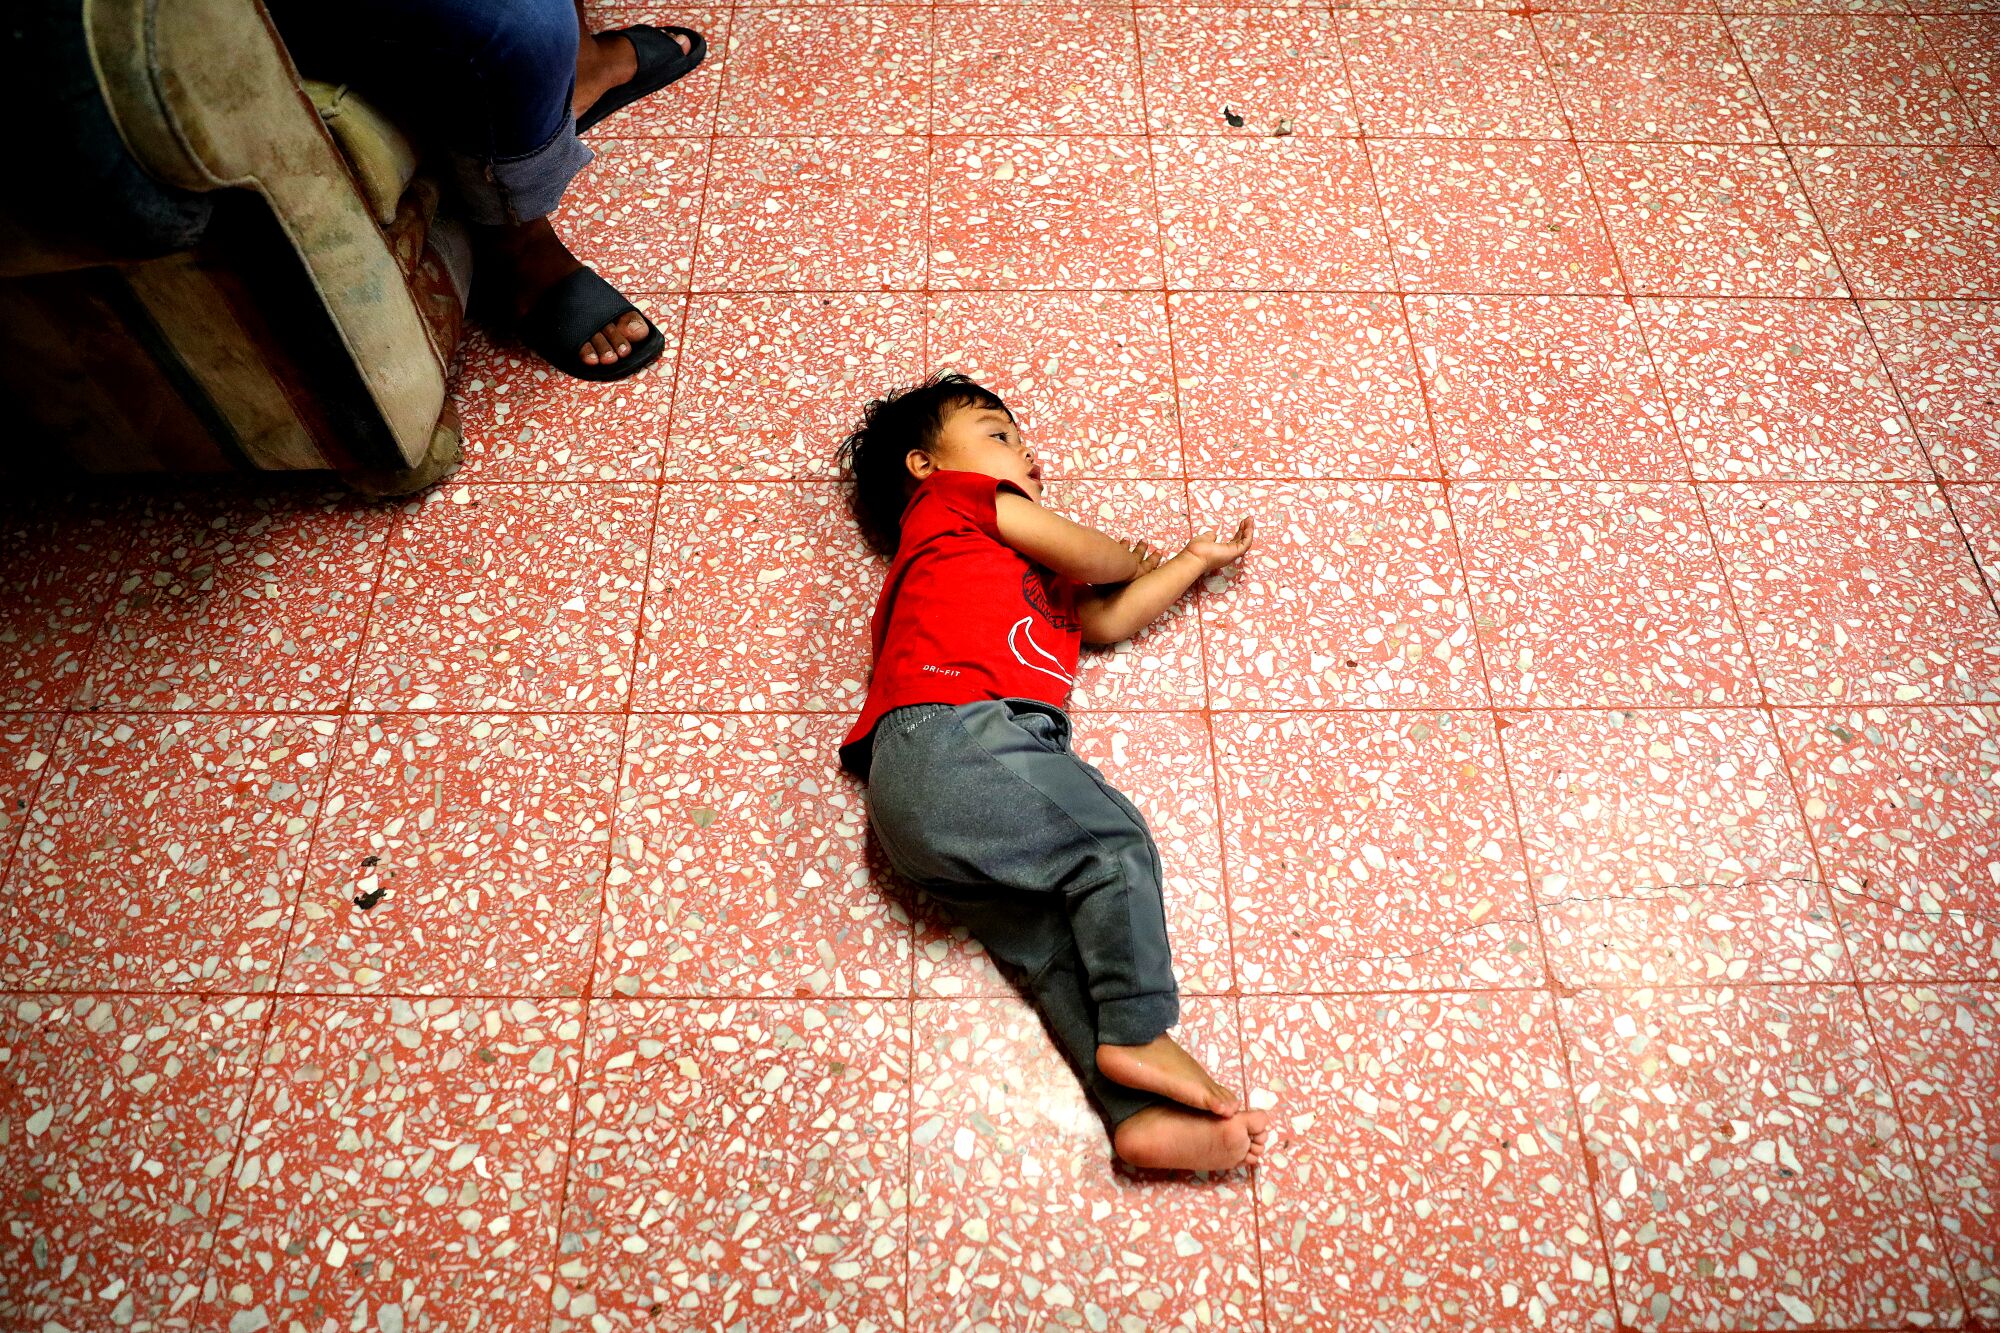 Meksika, Mexicali'deki bir barınakta bir çocuk yerde yatıyor.